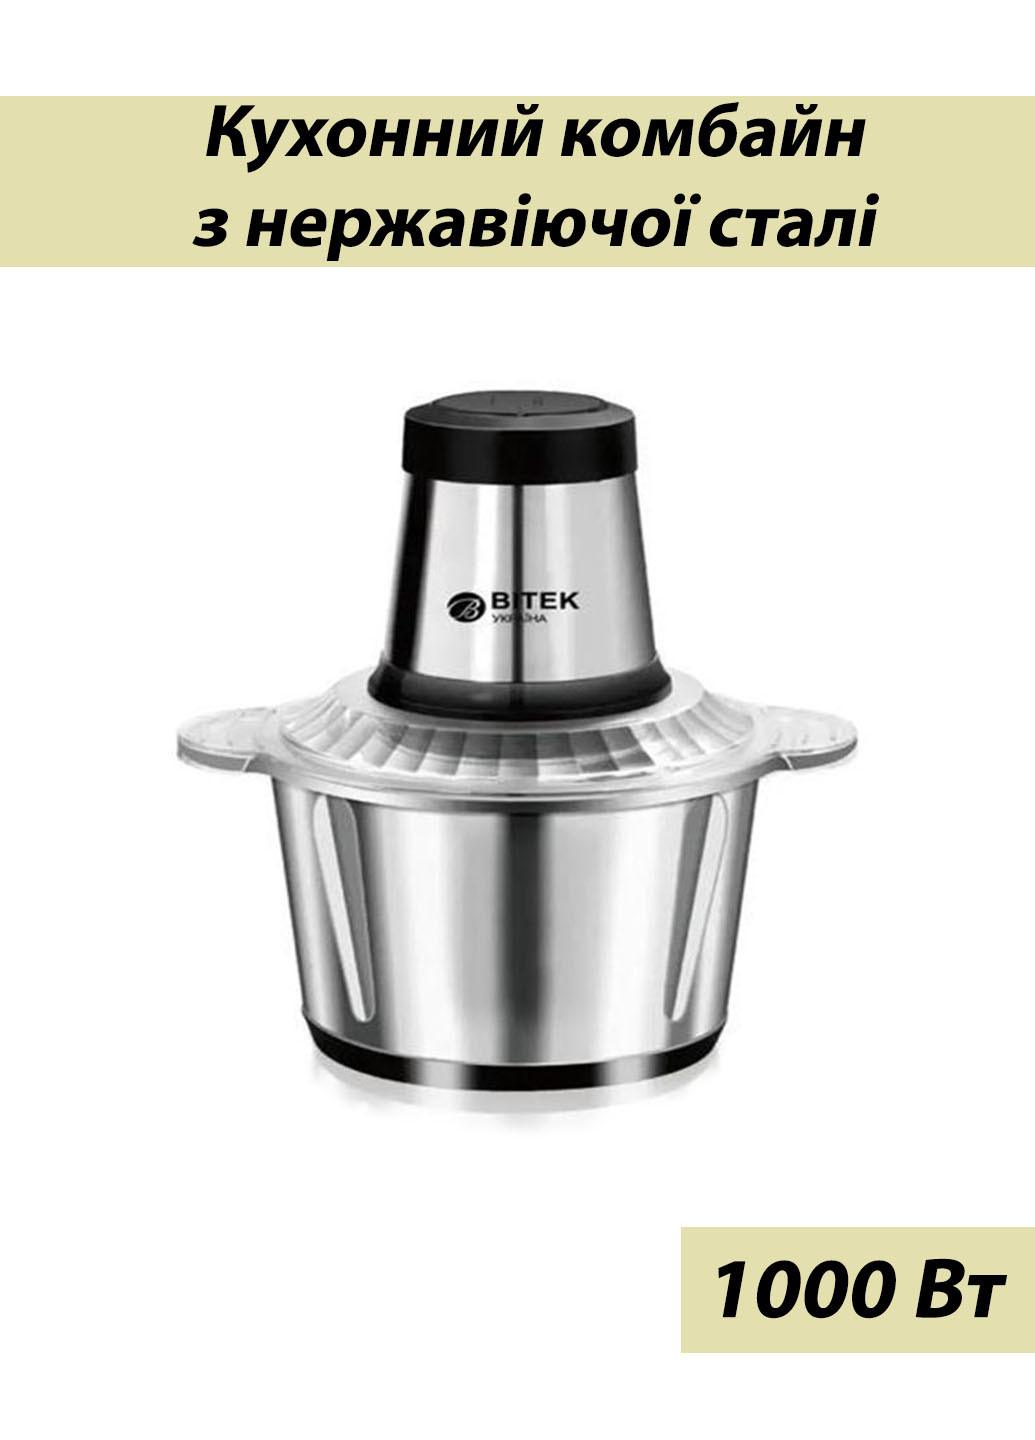 Кухонний комбайн BITEK подрібнювач з нержавіючої сталі 1000 Вт 2.0 л Good Idea bt-7019 (260555036)